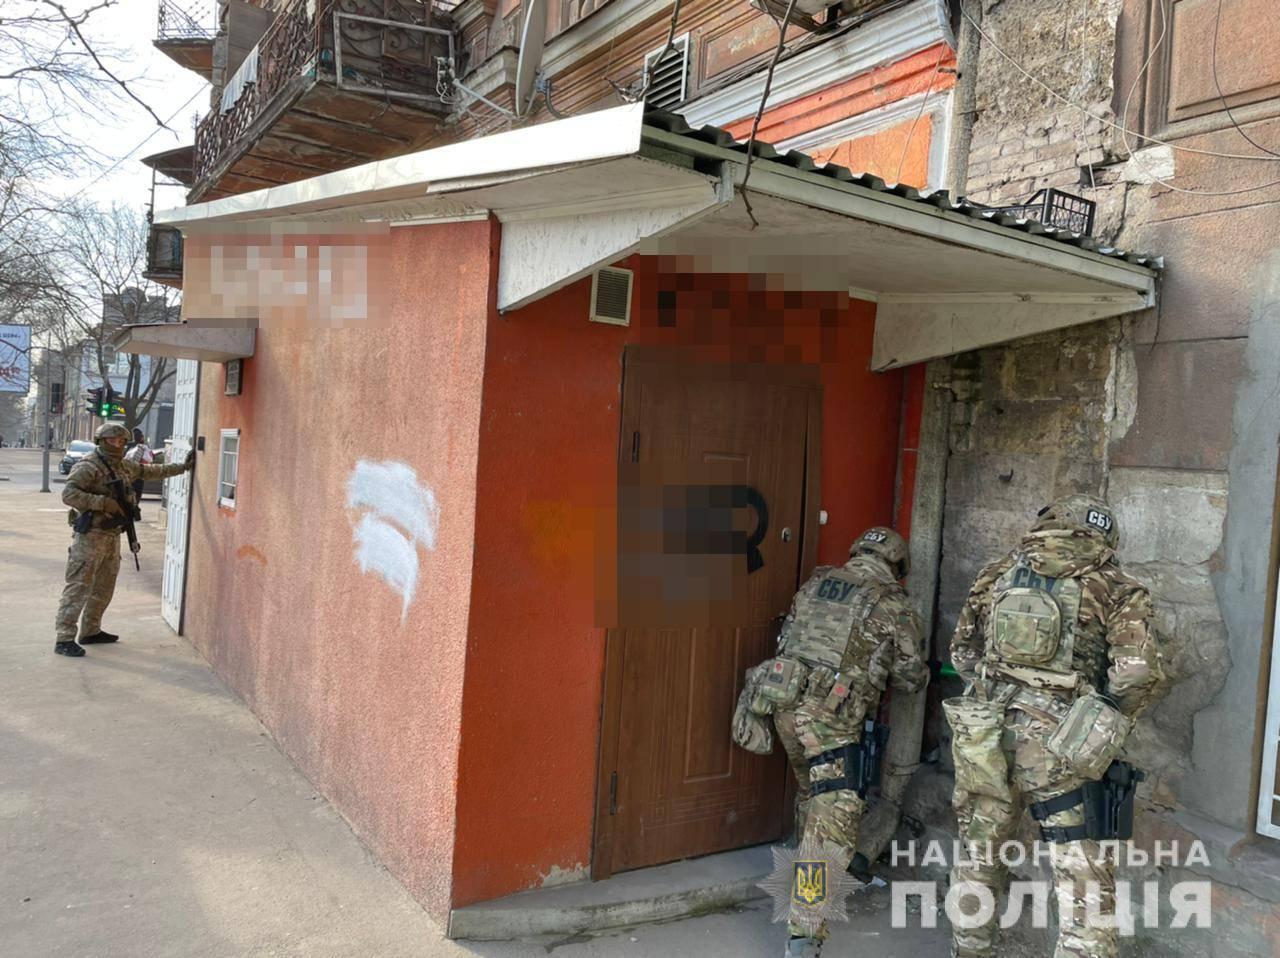 Правоохоронці Одещини оголосили підозру групі осіб у незаконній діяльності з організації та проведення азартних ігор